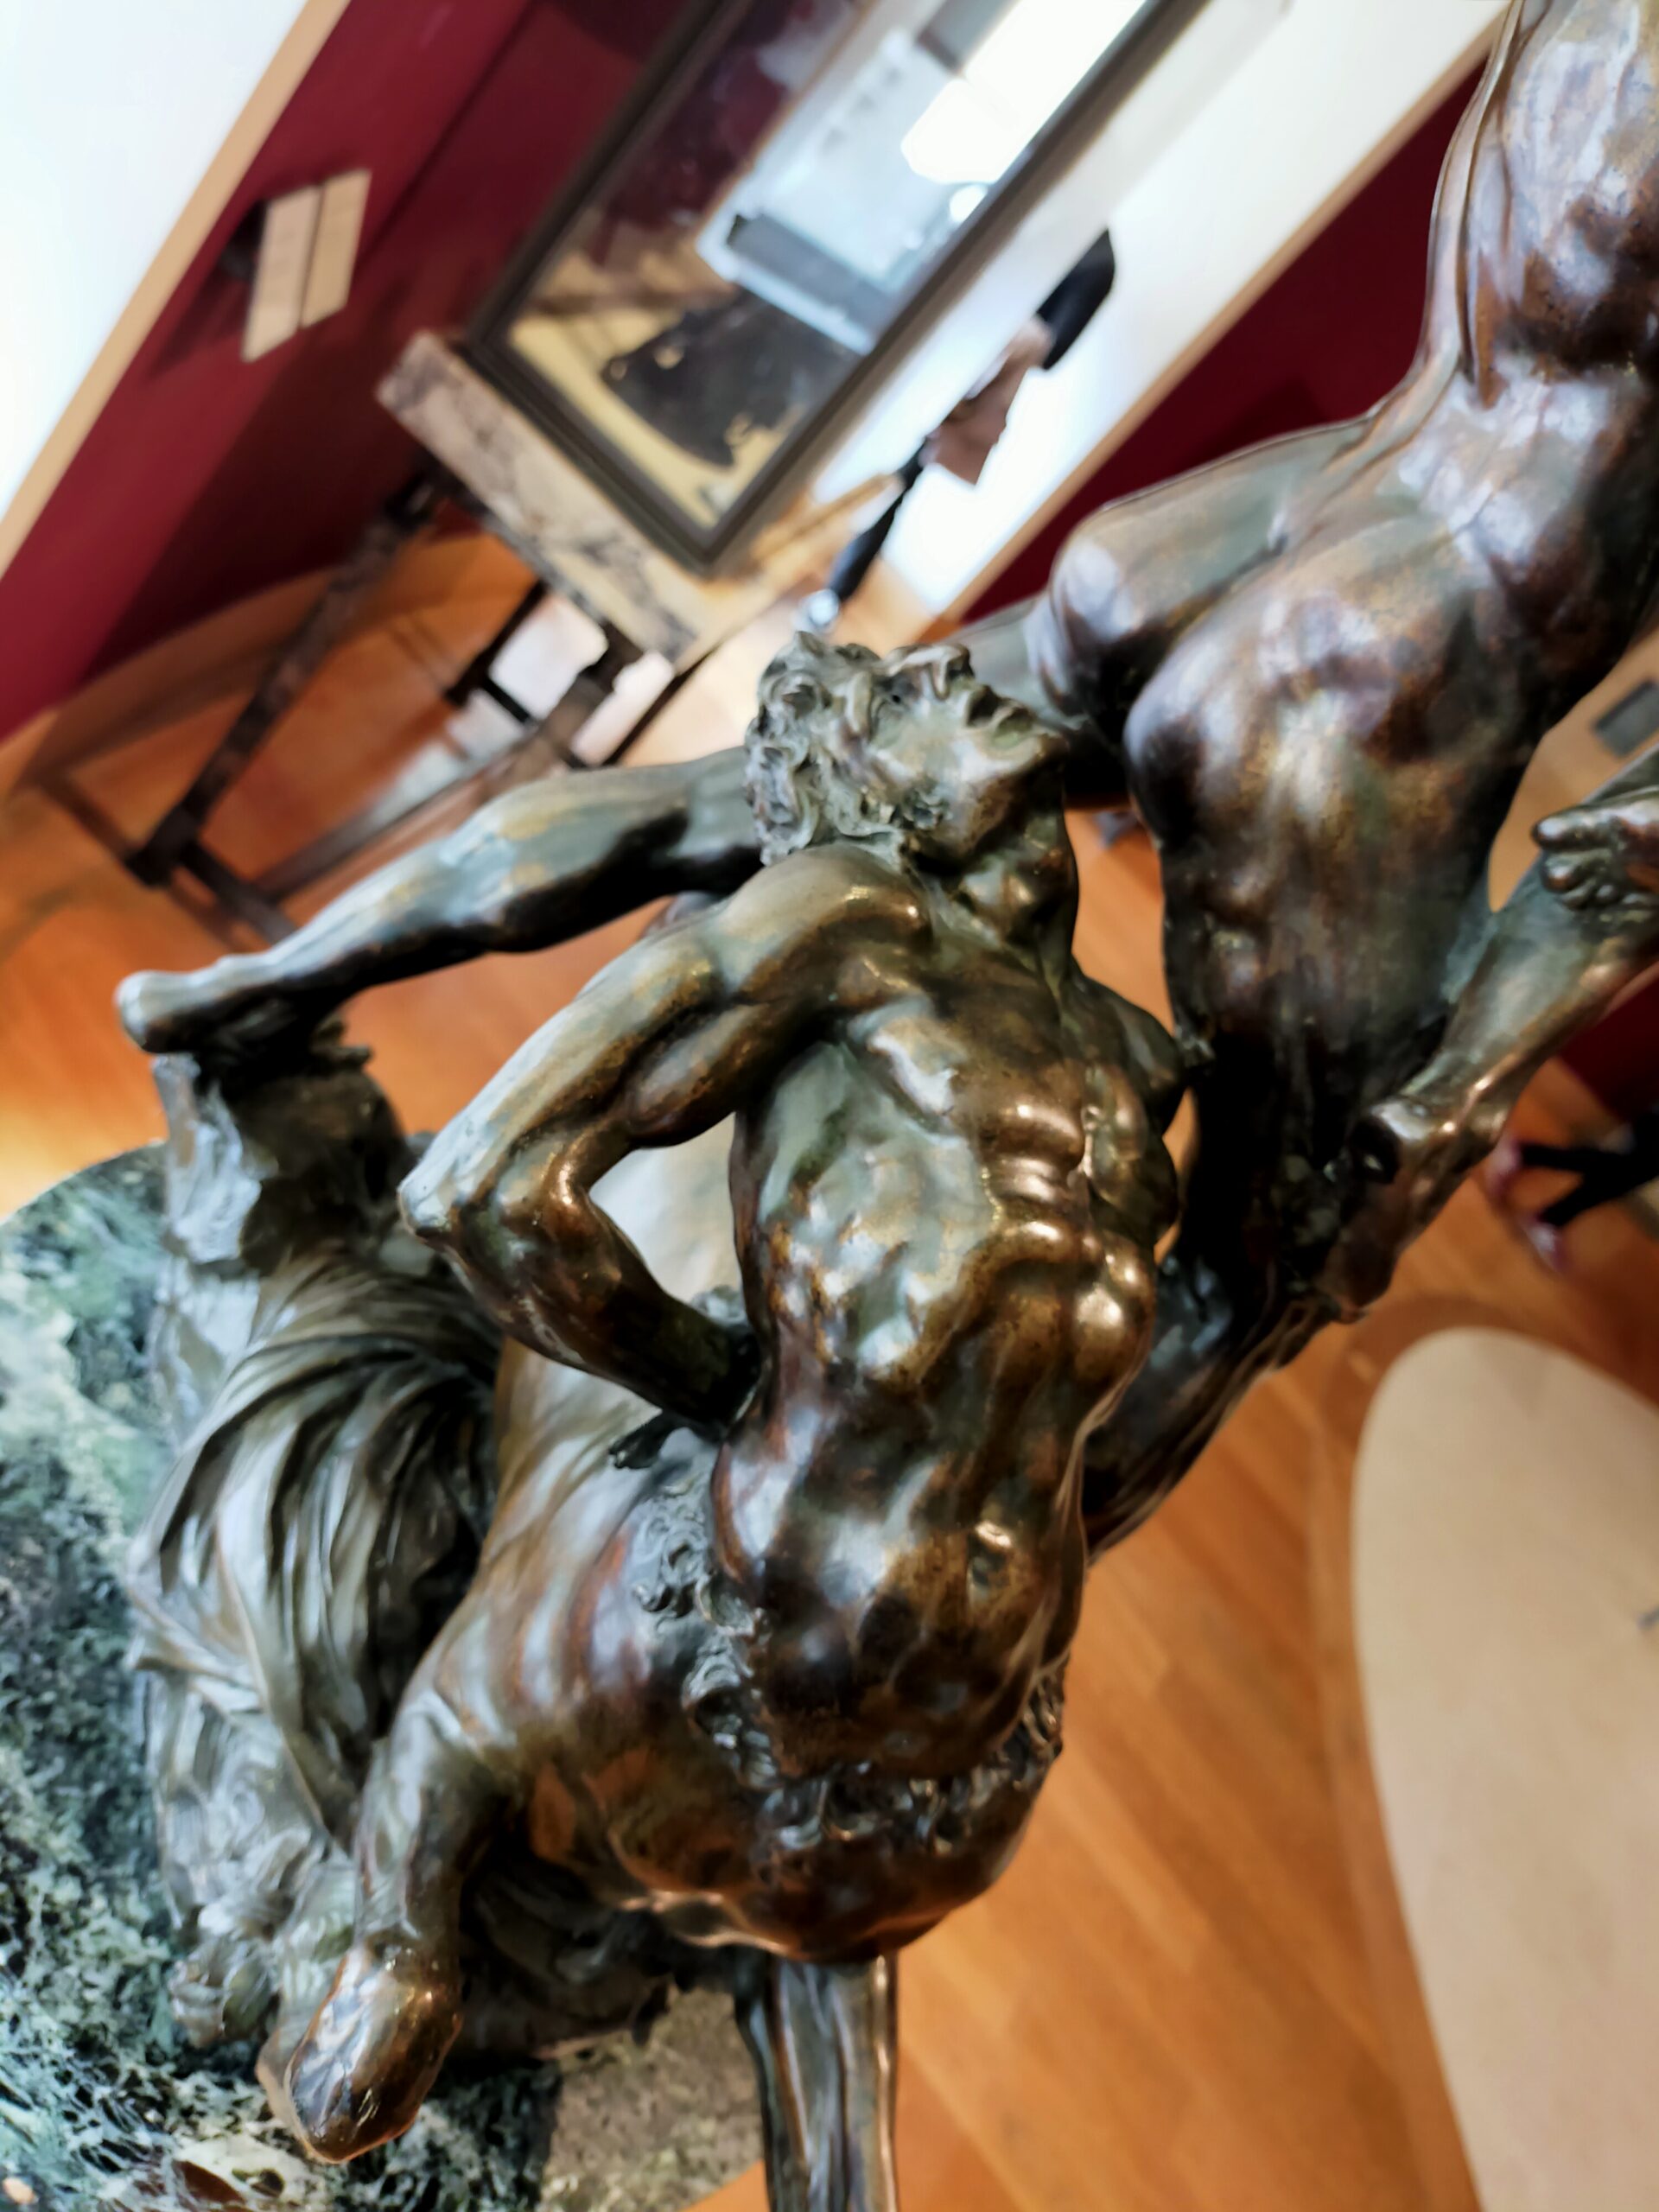 Tre angolazioni di una scultura bronzea raffigurante il salvataggio di Deianira dalle grinfie di Nesso, ad opera di Ercole. Opera dello scultore Adriaen De Vries, realizzata tra il 1605 e il 1608 e oggi conservata al Museo del Louvre. Foto propria.